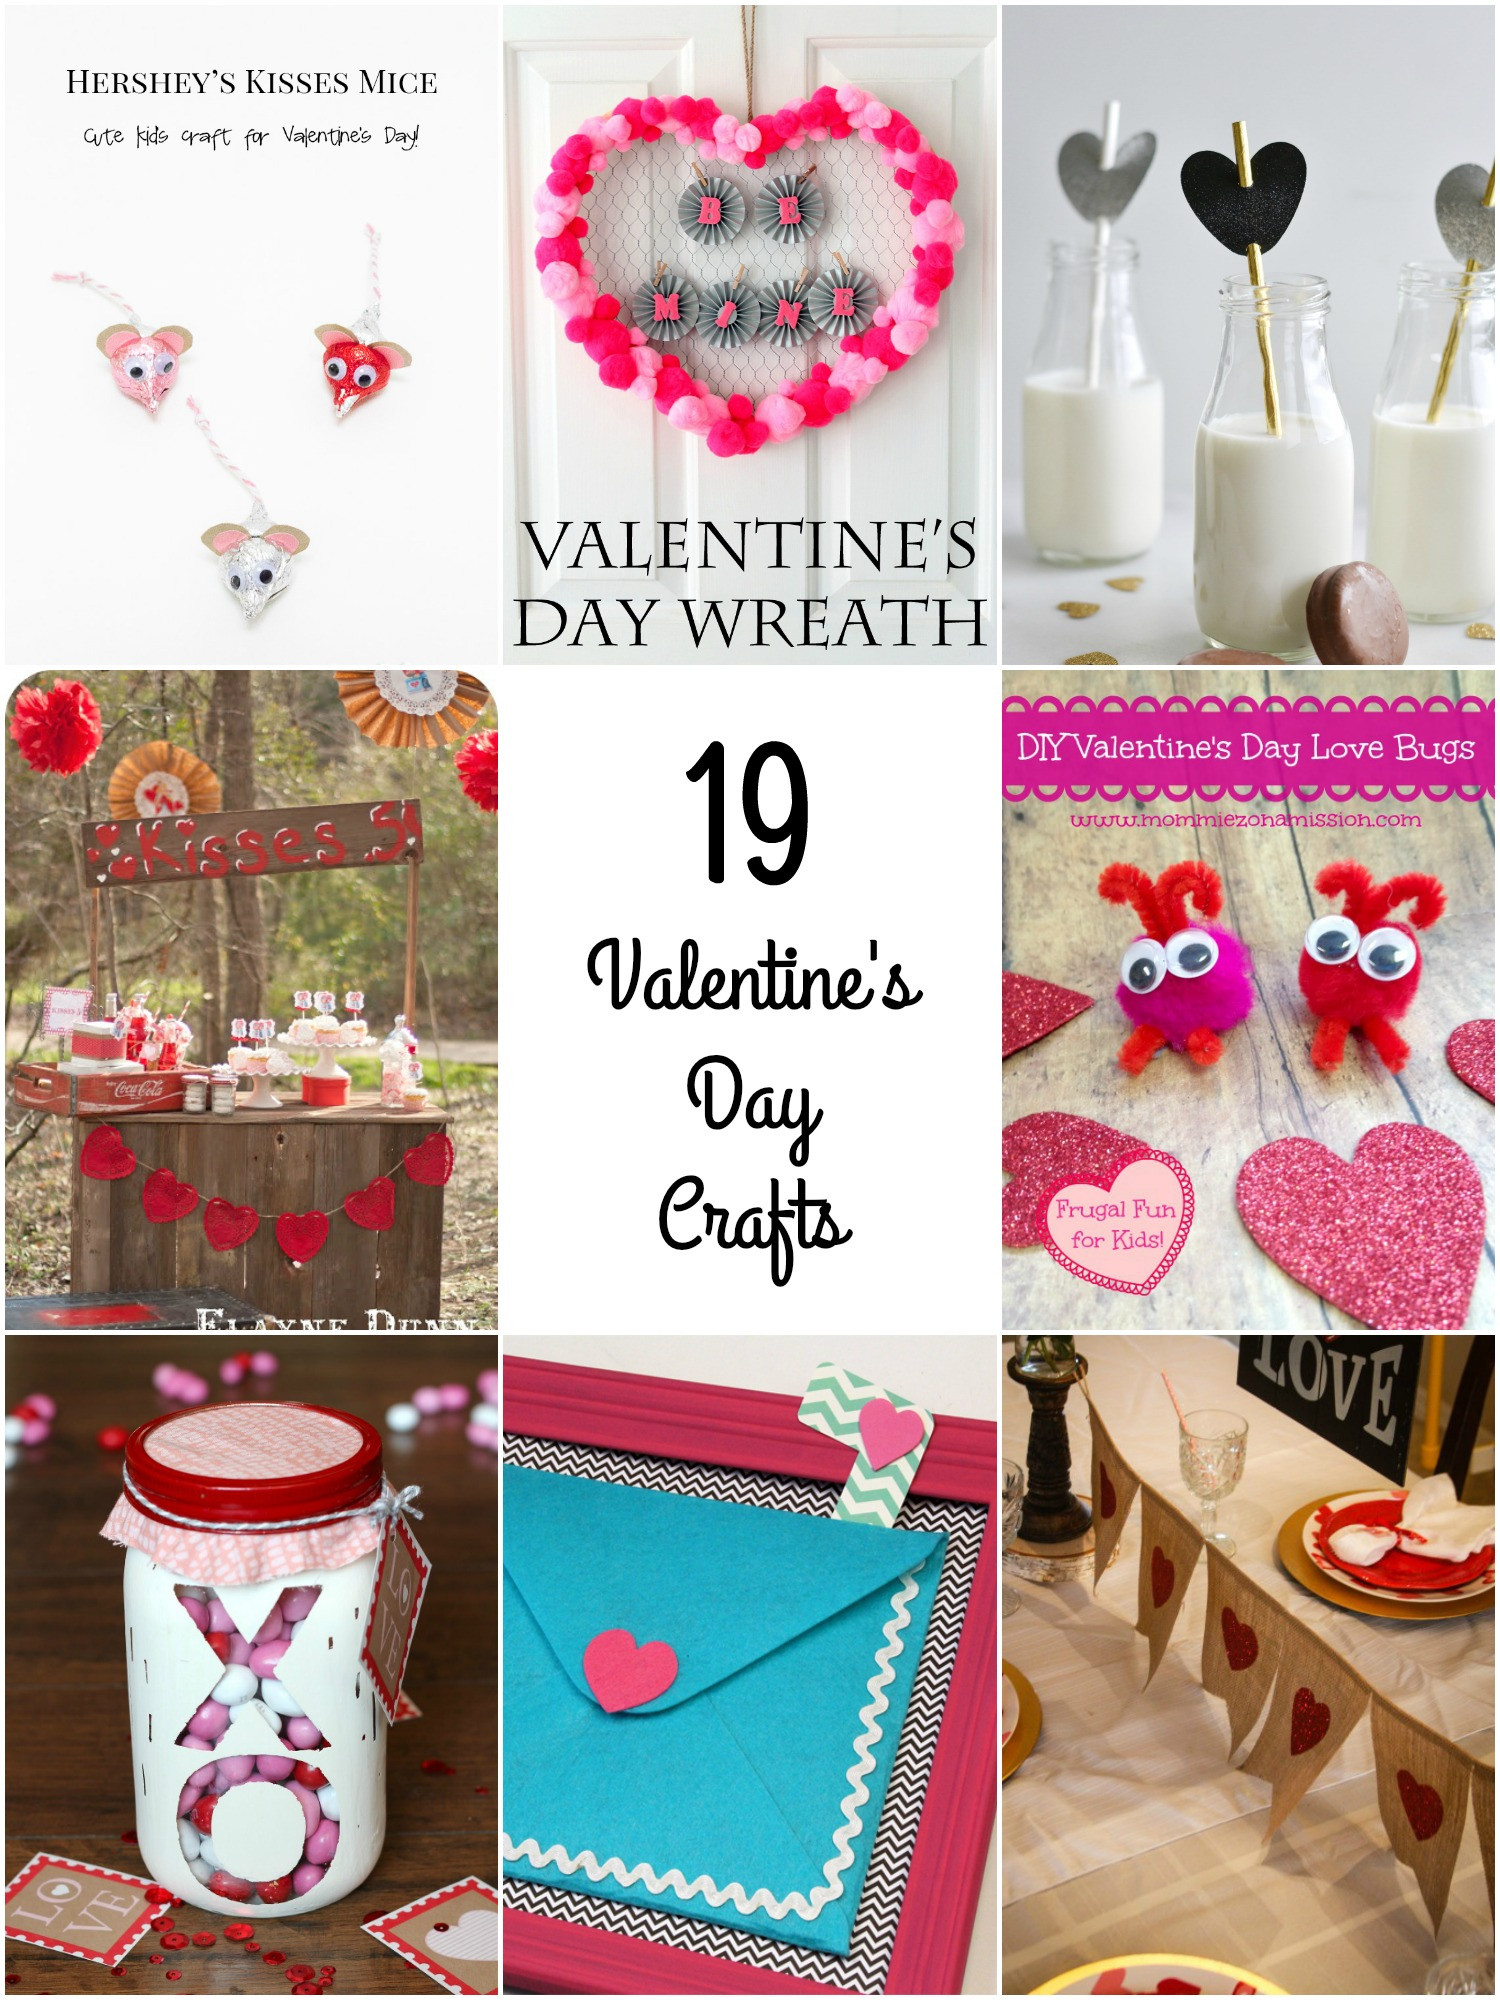 Valentines Day Crafts
 So Creative 19 Fun Valentine s Day Crafts